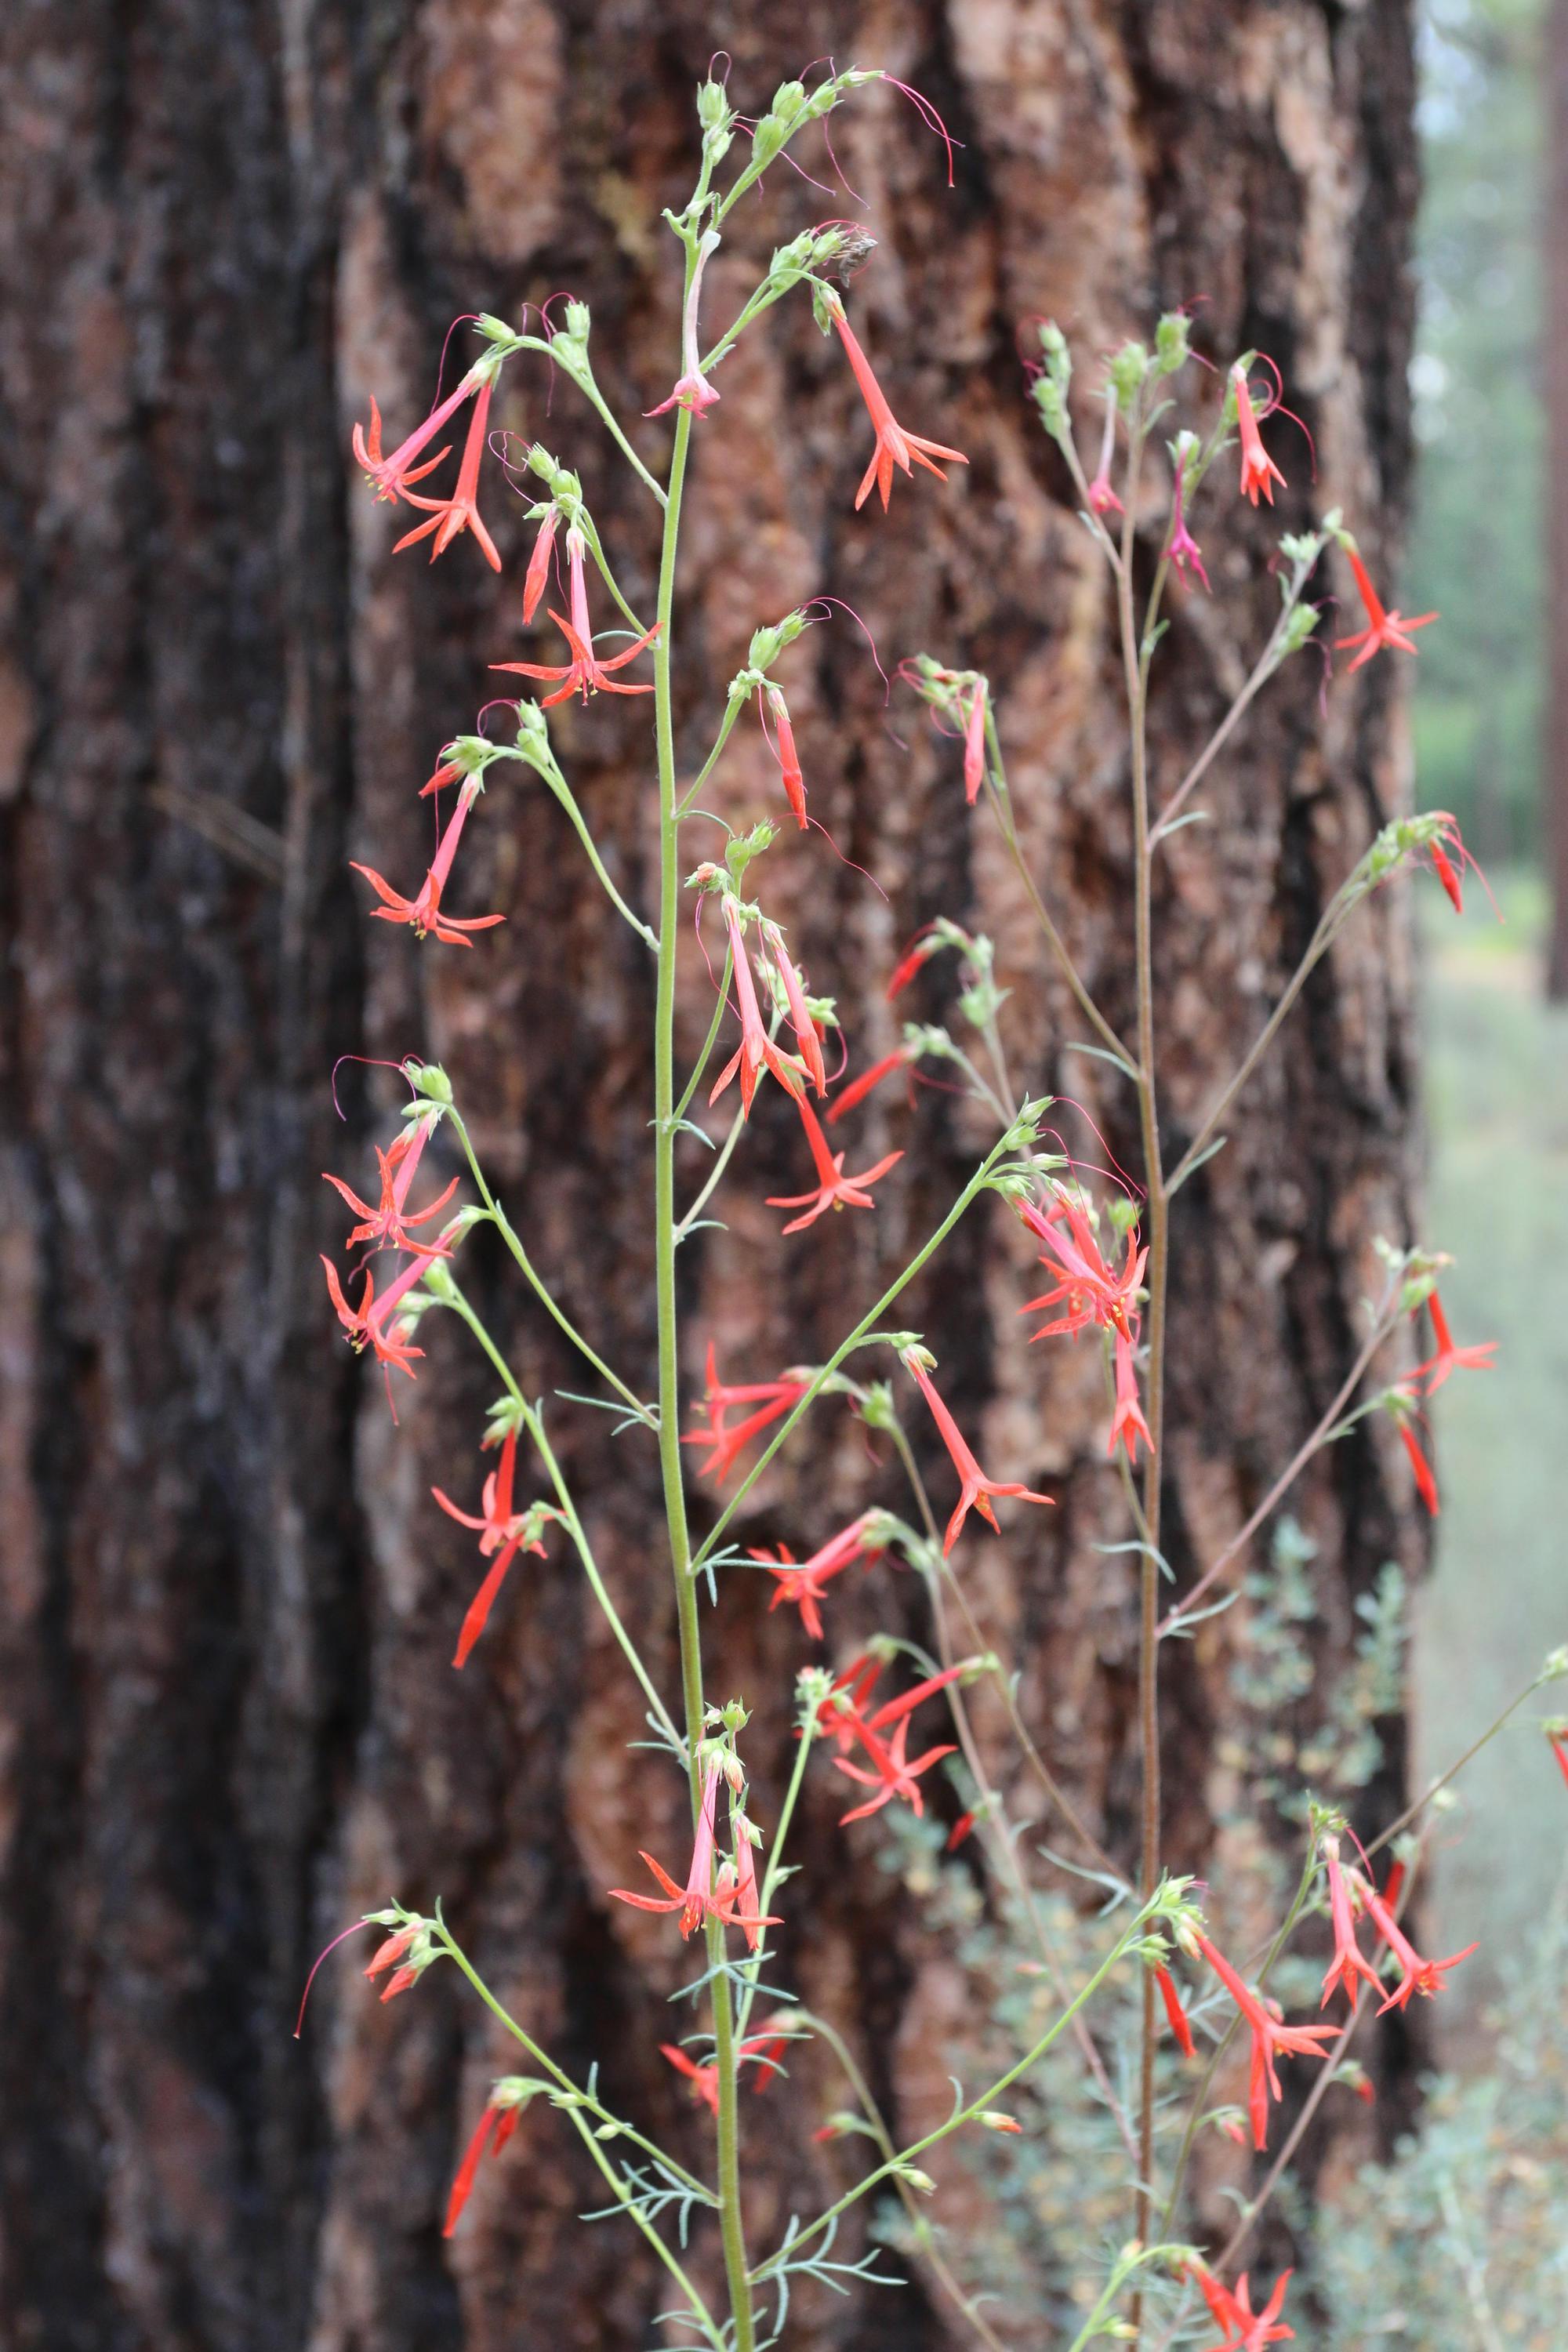 Scarlet gilia near a ponderosa pine